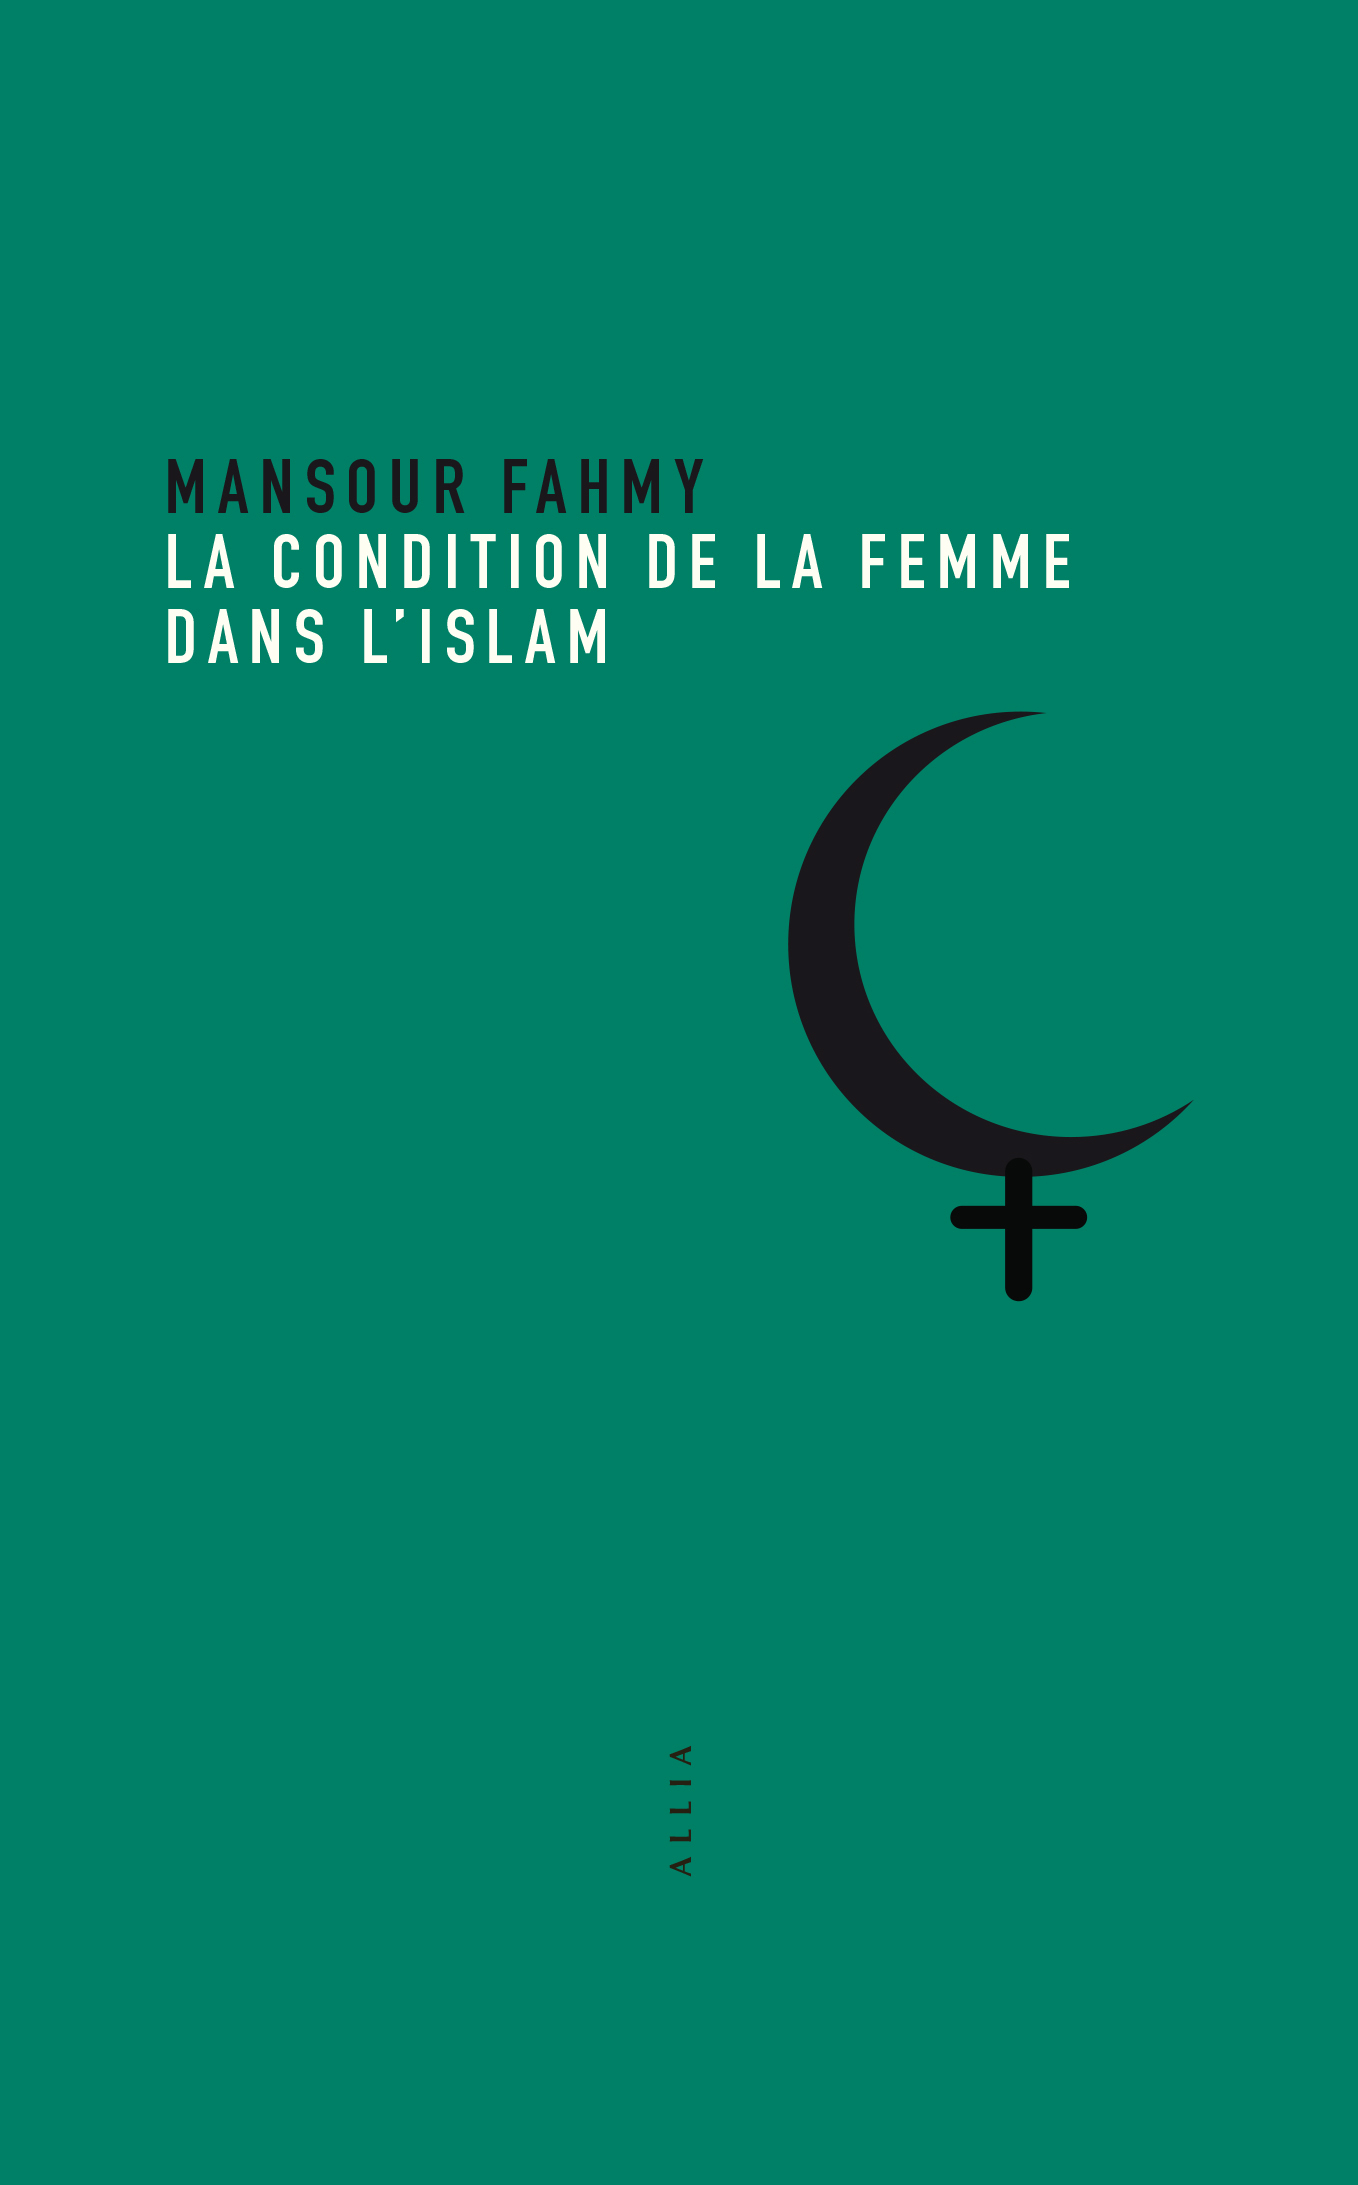 La Condition de la femme dans l’Islam